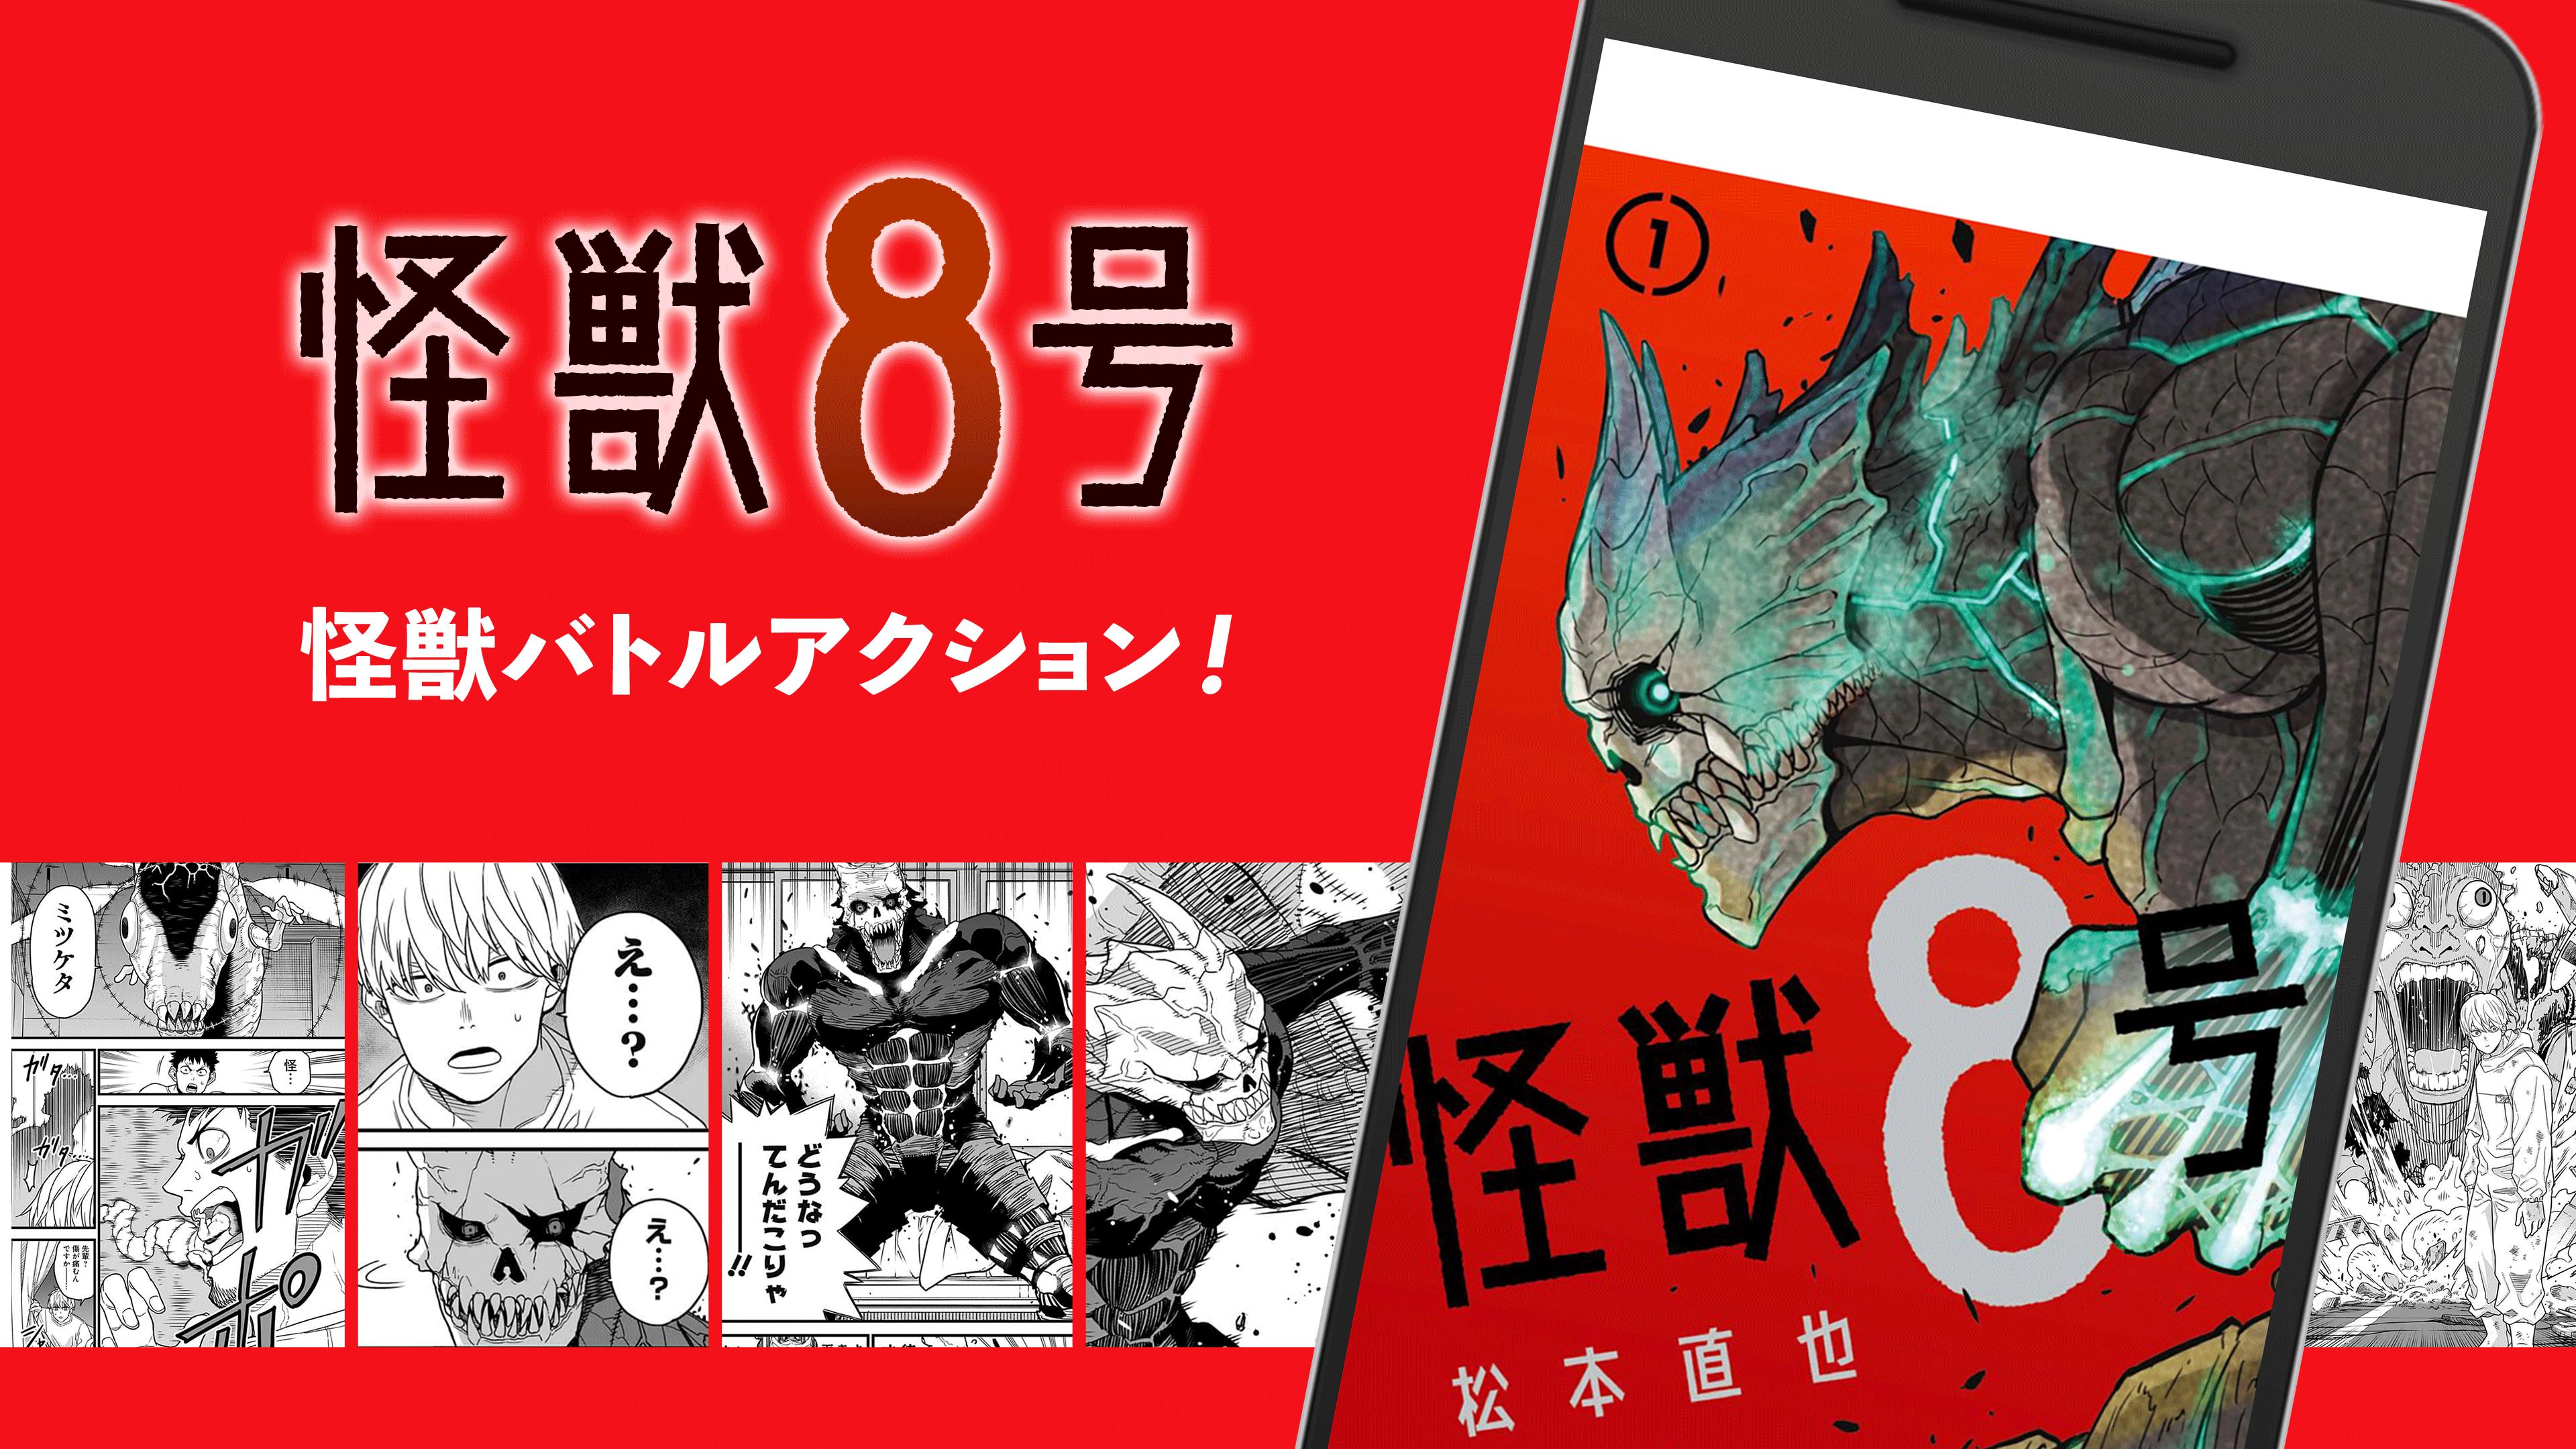 少年ジャンプ 最強人気オリジナルマンガや電子書籍 アニメ原作コミックが無料で毎日更新の漫画雑誌アプリ For Android Apk Download